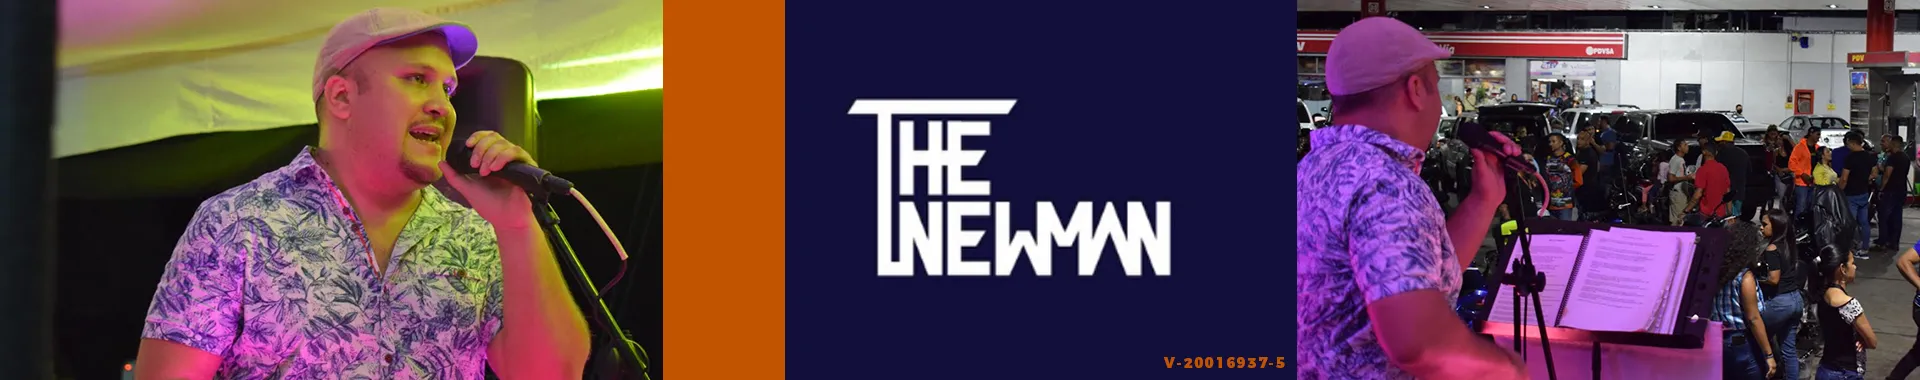 Imagen 1 del perfil de The Newman